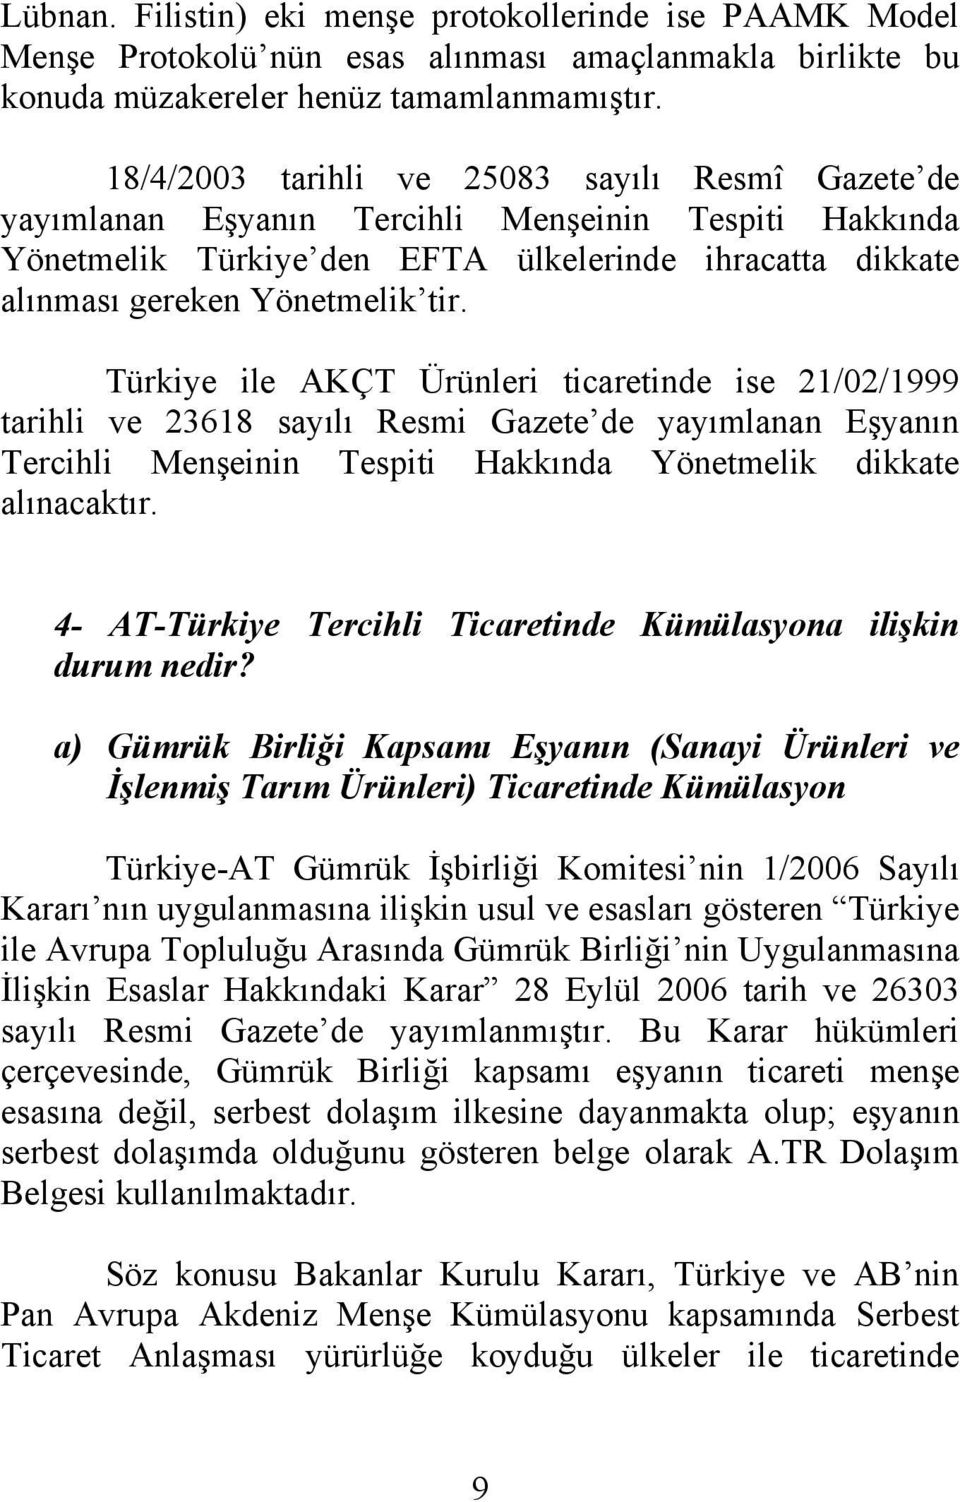 Türkiye ile AKÇT Ürünleri ticaretinde ise 21/02/1999 tarihli ve 23618 sayılı Resmi Gazete de yayımlanan Eşyanın Tercihli Menşeinin Tespiti Hakkında Yönetmelik dikkate alınacaktır.